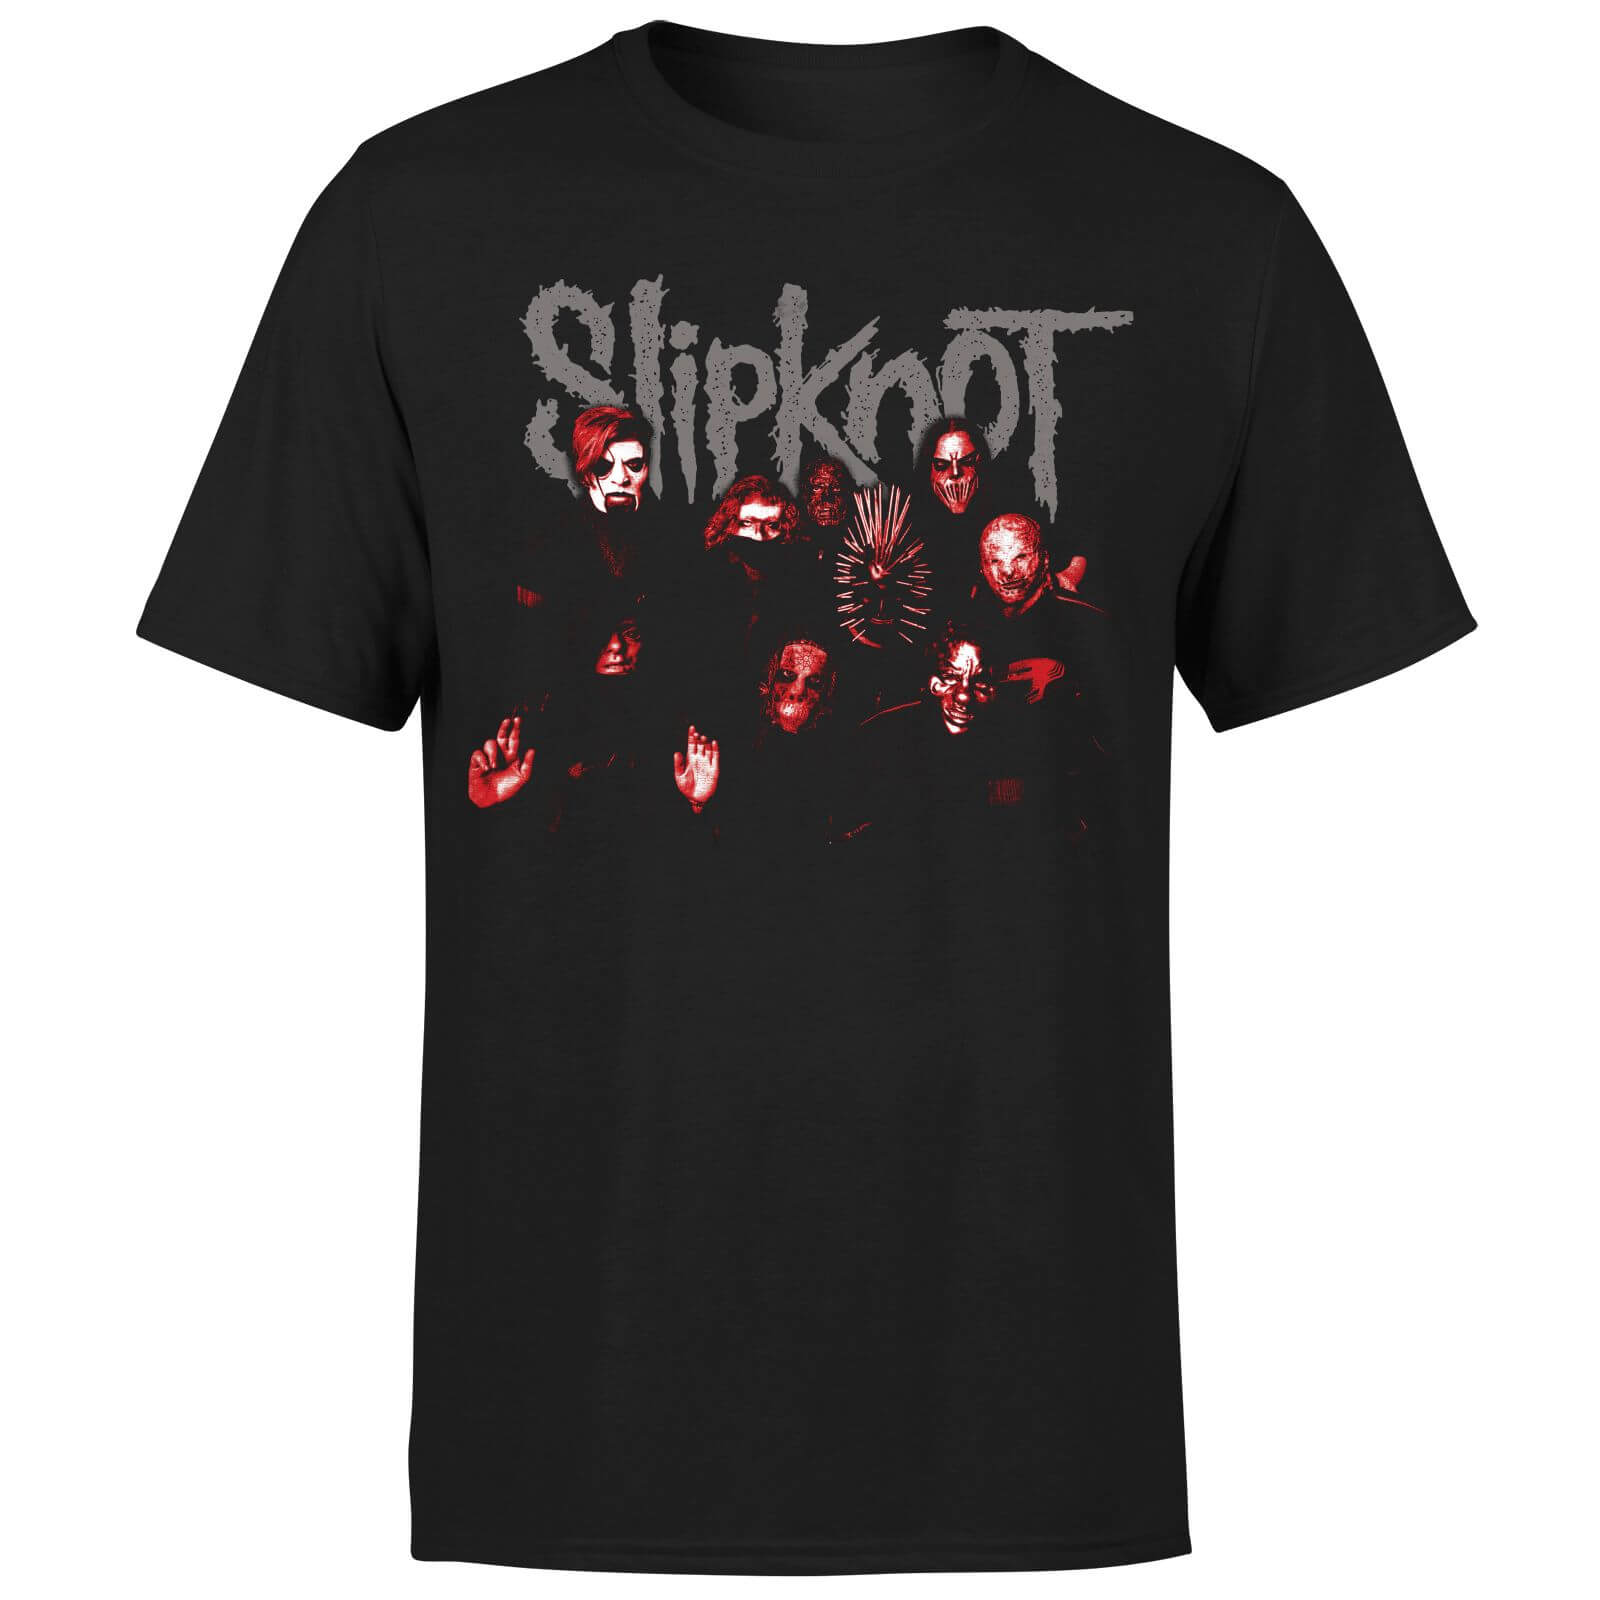 Slipknot Knot T-Shirt - Black - M - Black